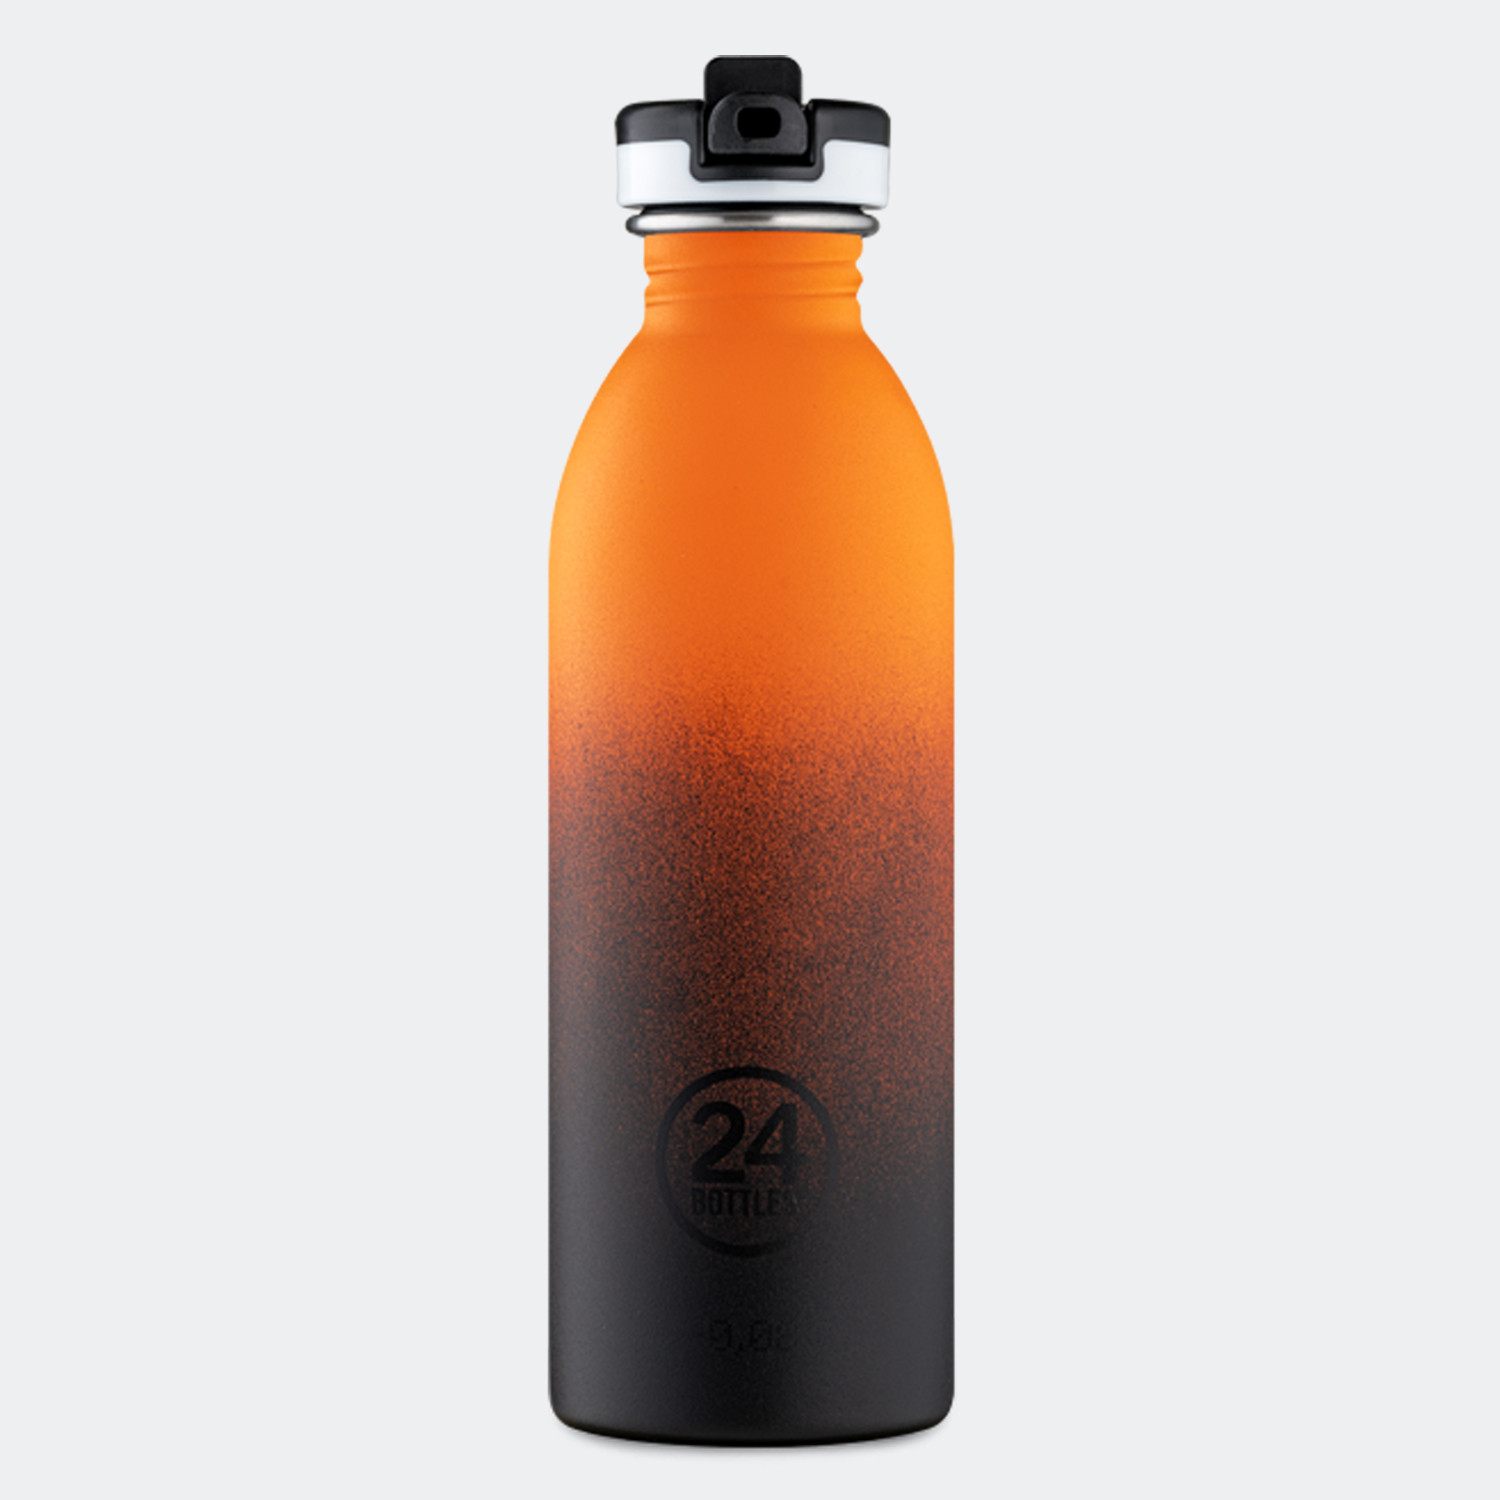 24Bottles Urban Bottle Ανοξείδωτο Μπουκάλι Θερμός 500 ml (9000100231_42033)